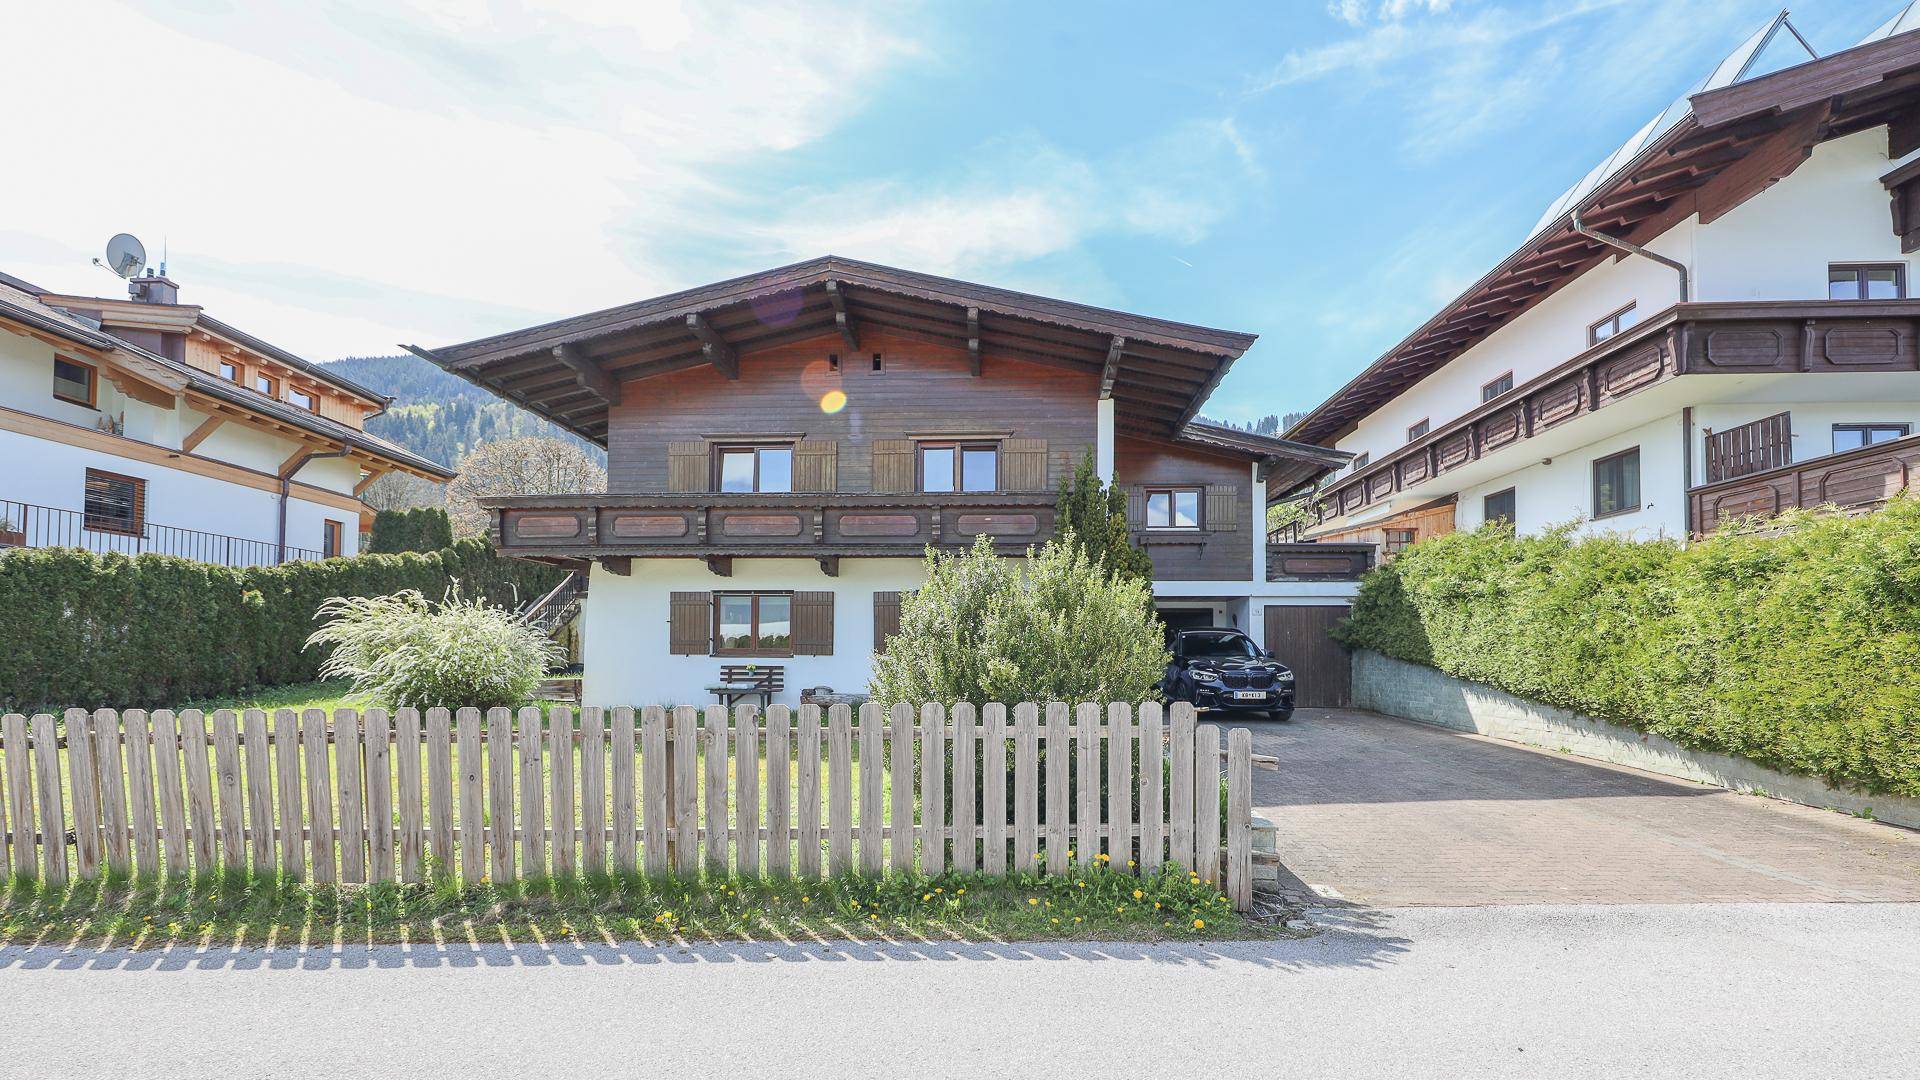 KITZIMMO-Baugrundstück mit Freizeitwohnsitz - Immobilien kaufen Reith bei Kitzbühel.